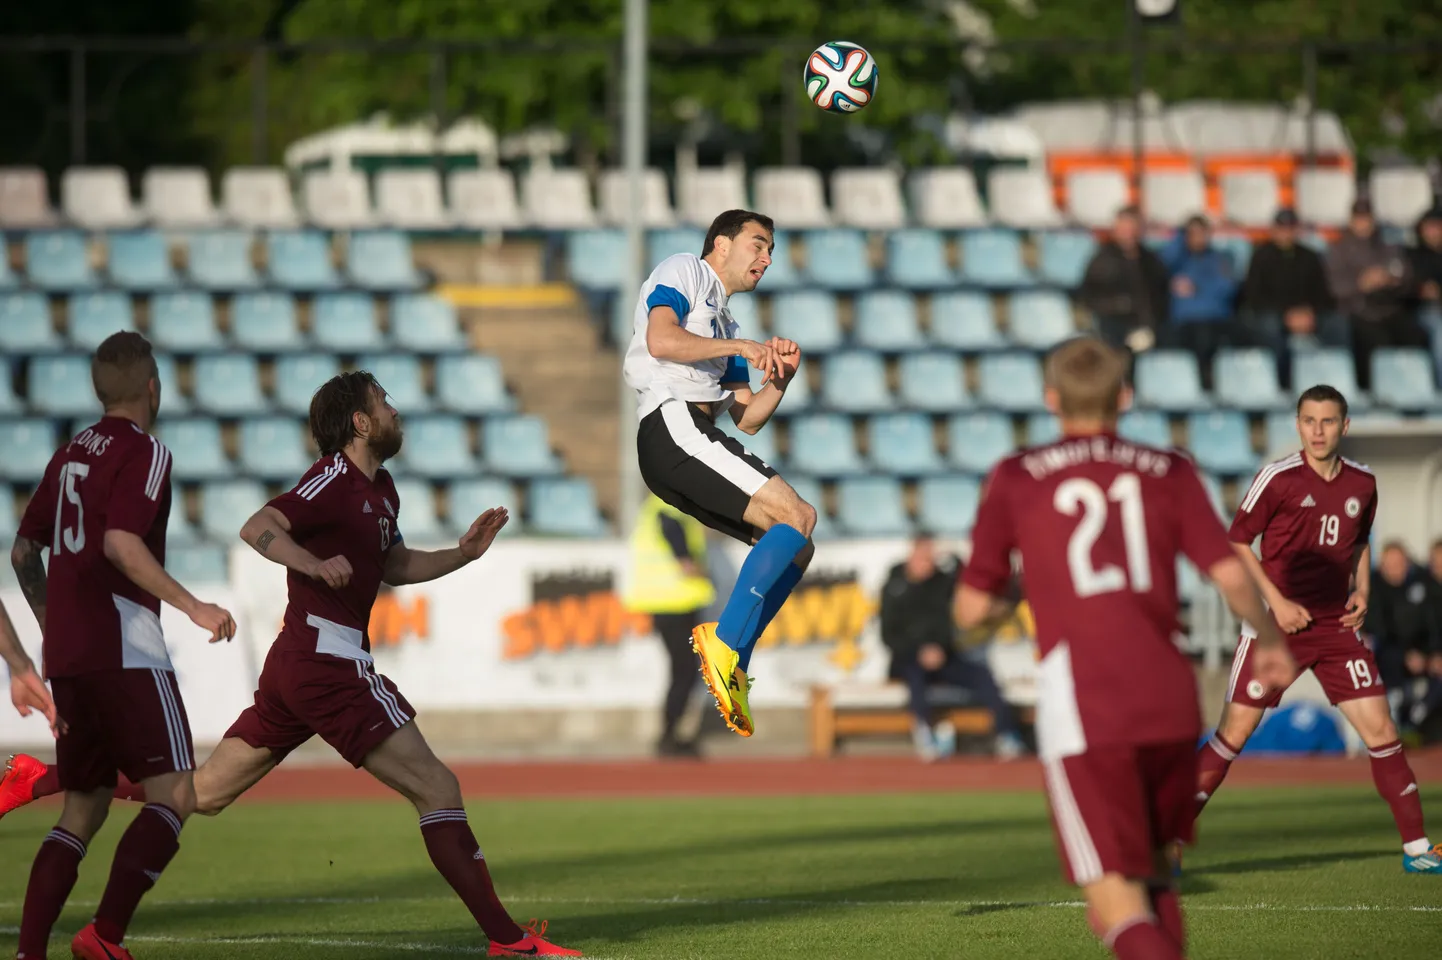 Eesti jalgpallikoondis pidi Balti turniiri poolfinaalis tunnistama peanltiseeria järel Läti 4:2 paremust.